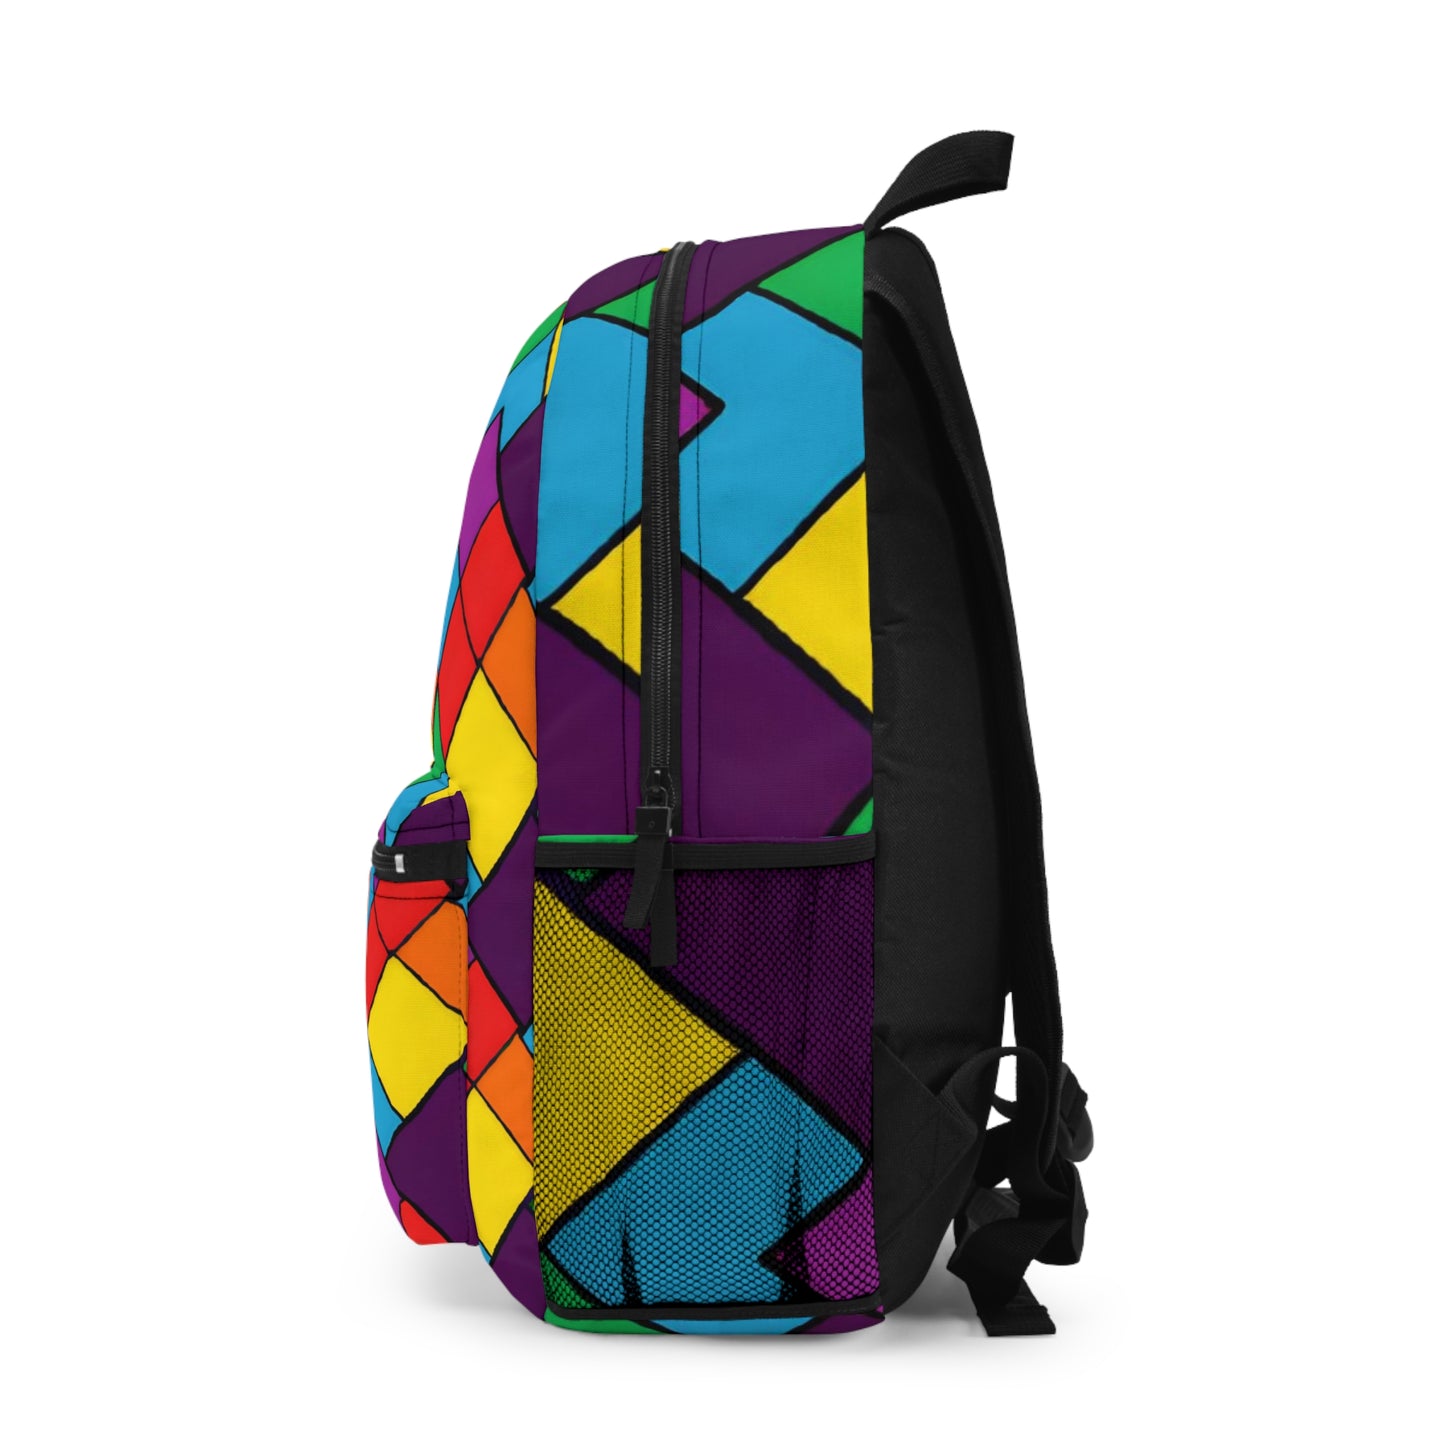 SparkleFever - Hustler Pride Backpack